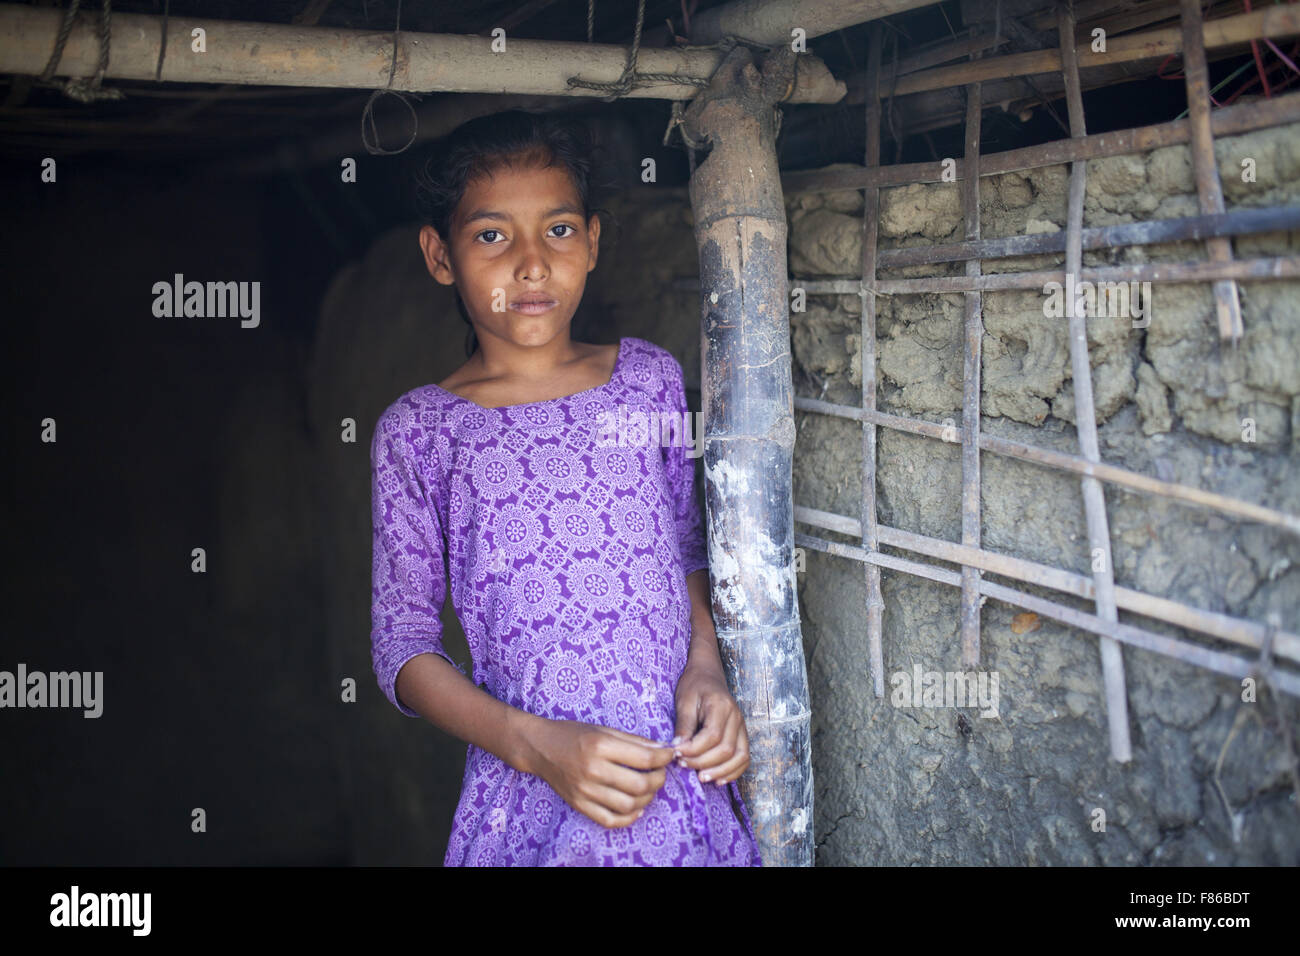 28. November 2015 - Cox Bazar, Bangladesch - COX BAZAR, Bangladesch - November 28: Kinder der Meeresspiegel steigt Bereich im Kutubdia Insel von Cox Bazar Viertel am 28. November, 2015.Kutubdia, eine Insel der Cox Bazar Küste. die Widrigkeiten der Natur ausgelöst vor allem durch Klima ändern. In den letzten zwei Jahrzehnten wurden die Auswirkungen des Klimawandels in Bangladesch Beschleunigung. Kutubdia ist auch schwer getroffen. Der Platz ist sehr anfällig für Wirbelstürme und Sturmfluten, die häufige und intensive in Bangladesch sowie steigender Meeresspiegel und stärkeren Wellen geworden sind. Das Ergebnis ist massive erosion Stockfoto